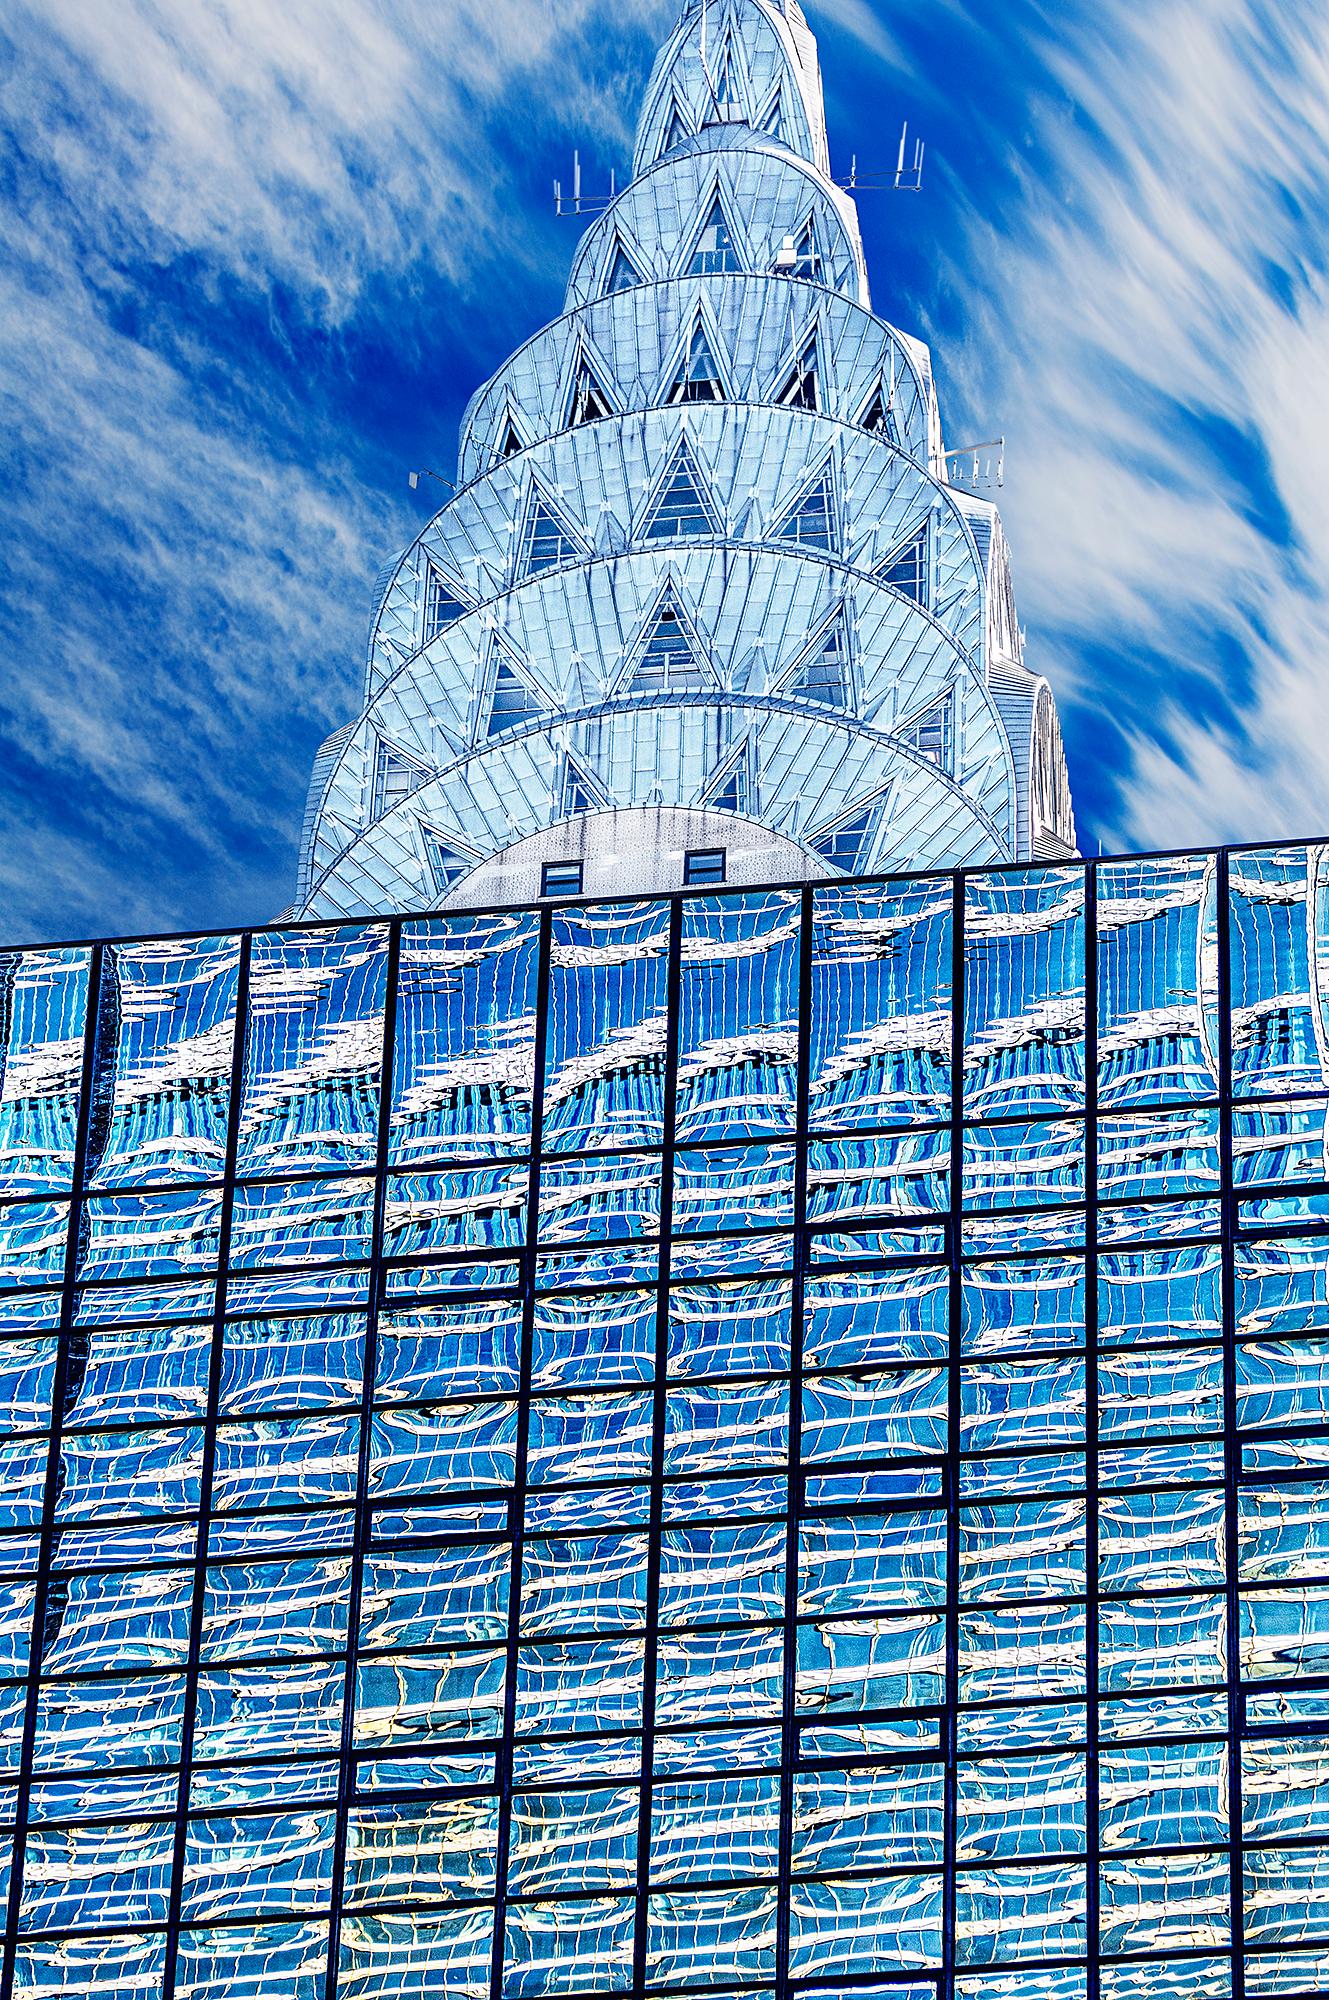 Chrysler-Gebäudeplatte  Art déco-Architektur in Blau und Silber